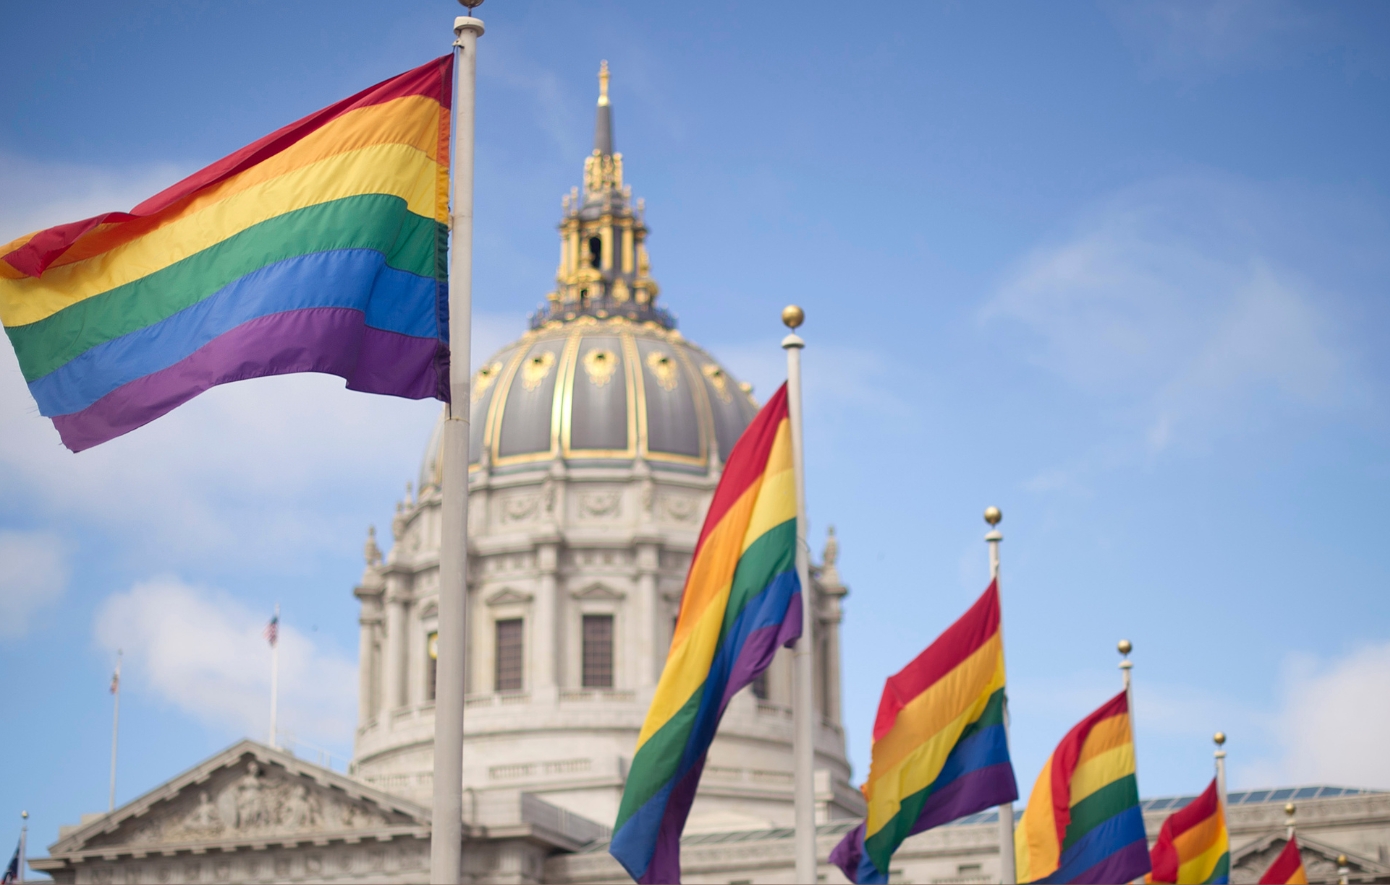 Σαν σήμερα 25 Ιουνίου: Η πρώτη πολύχρωμη σημαία υπερηφάνειας εμφανίζεται στο Σαν Φρανσίσκο